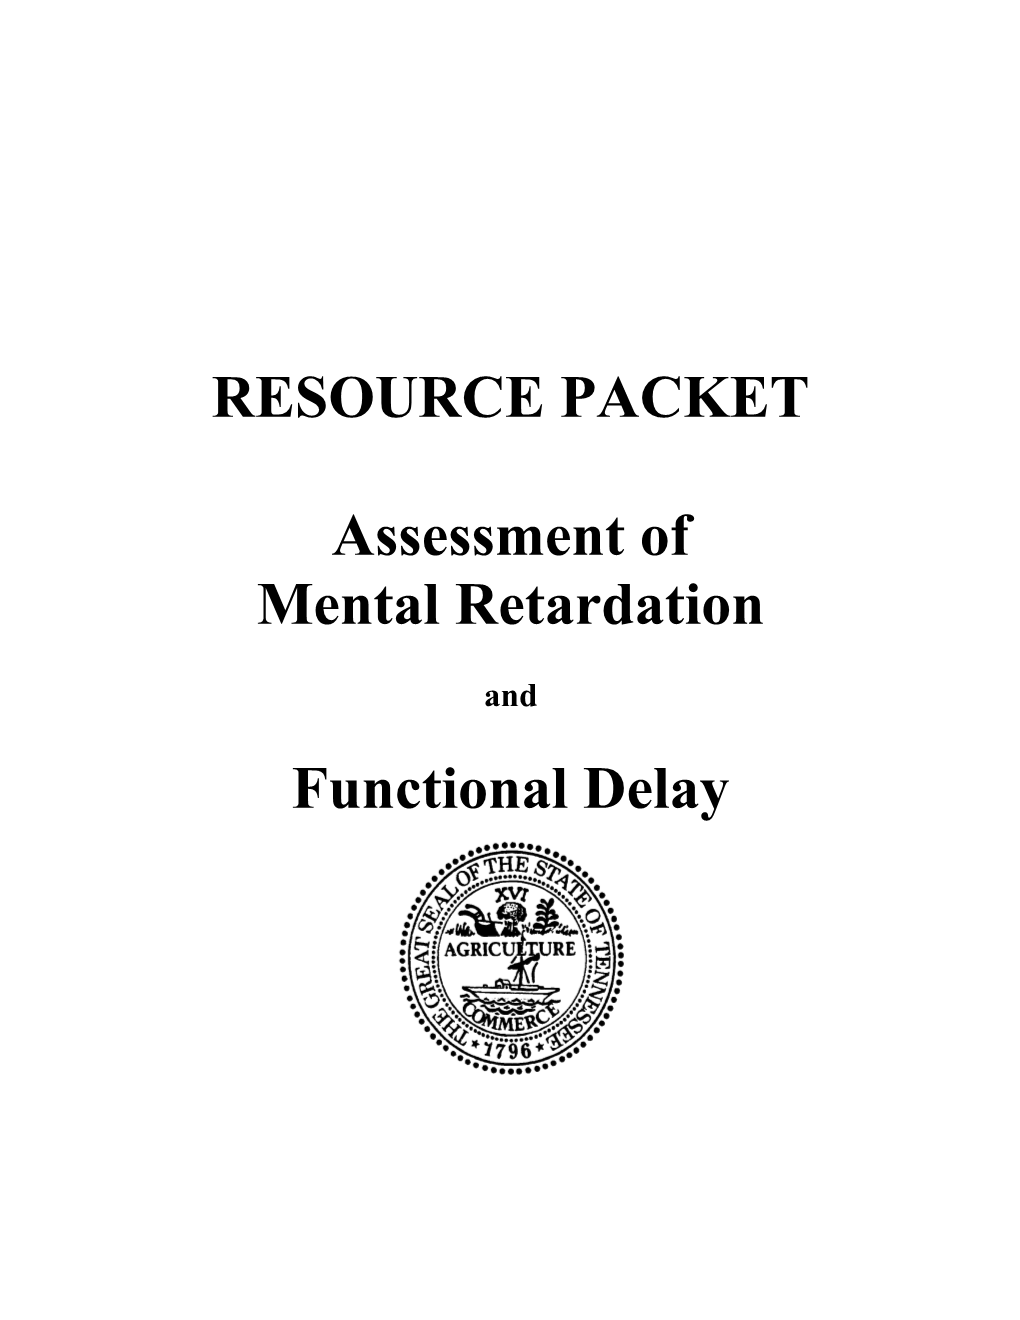 Referral Considerations Suspected Mental Retardation